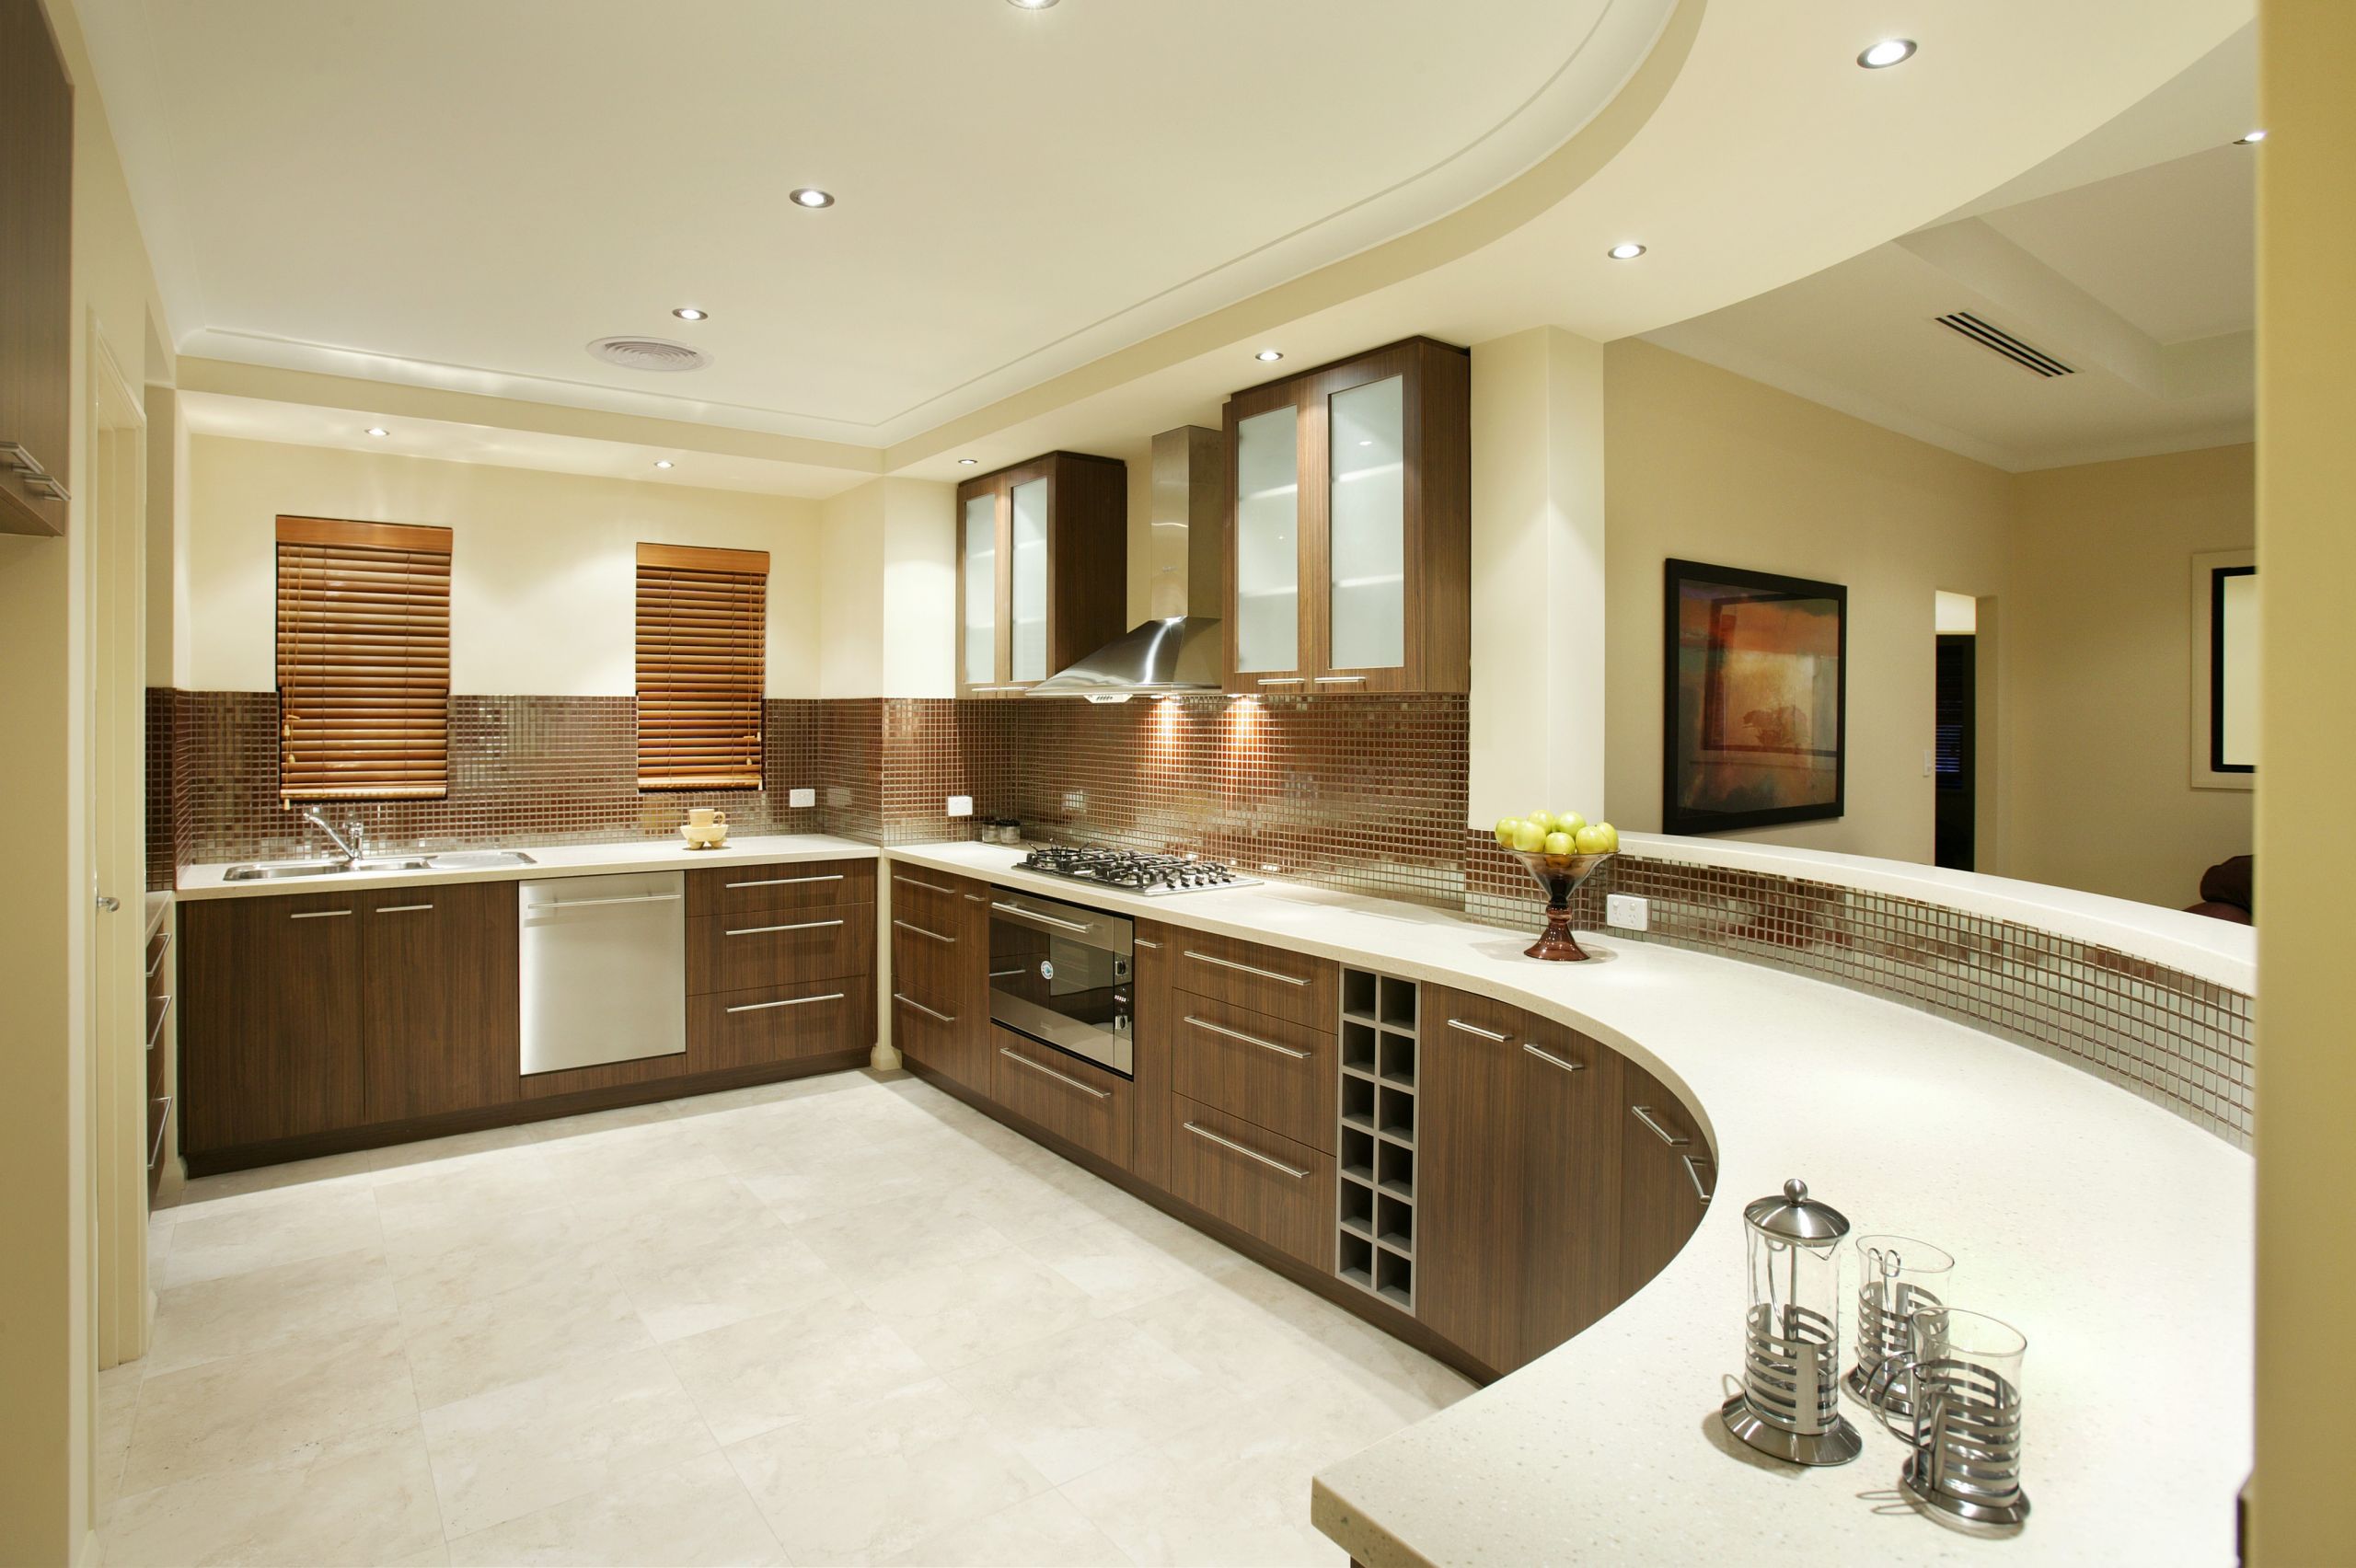 Kitchen Interior Design Ideas
 MODULAR KITCHEN INTERIOR